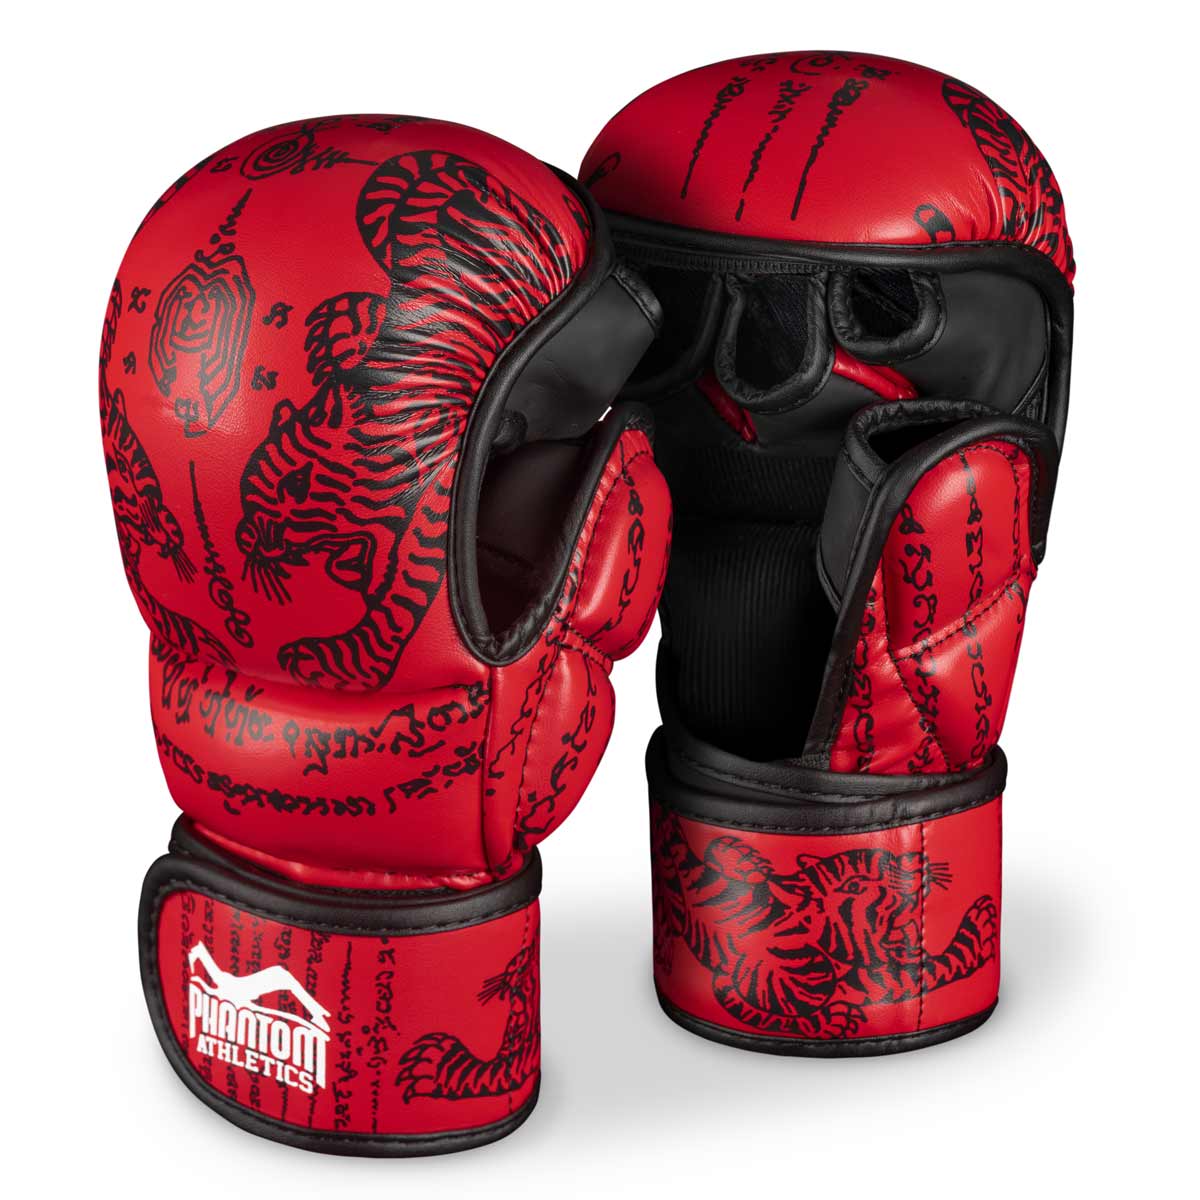 Phantom Muay Thai hansker for thaiboksing og MMA sparring, konkurranse og trening. I det tradisjonelle Sak Yant-designet og fargen rød.